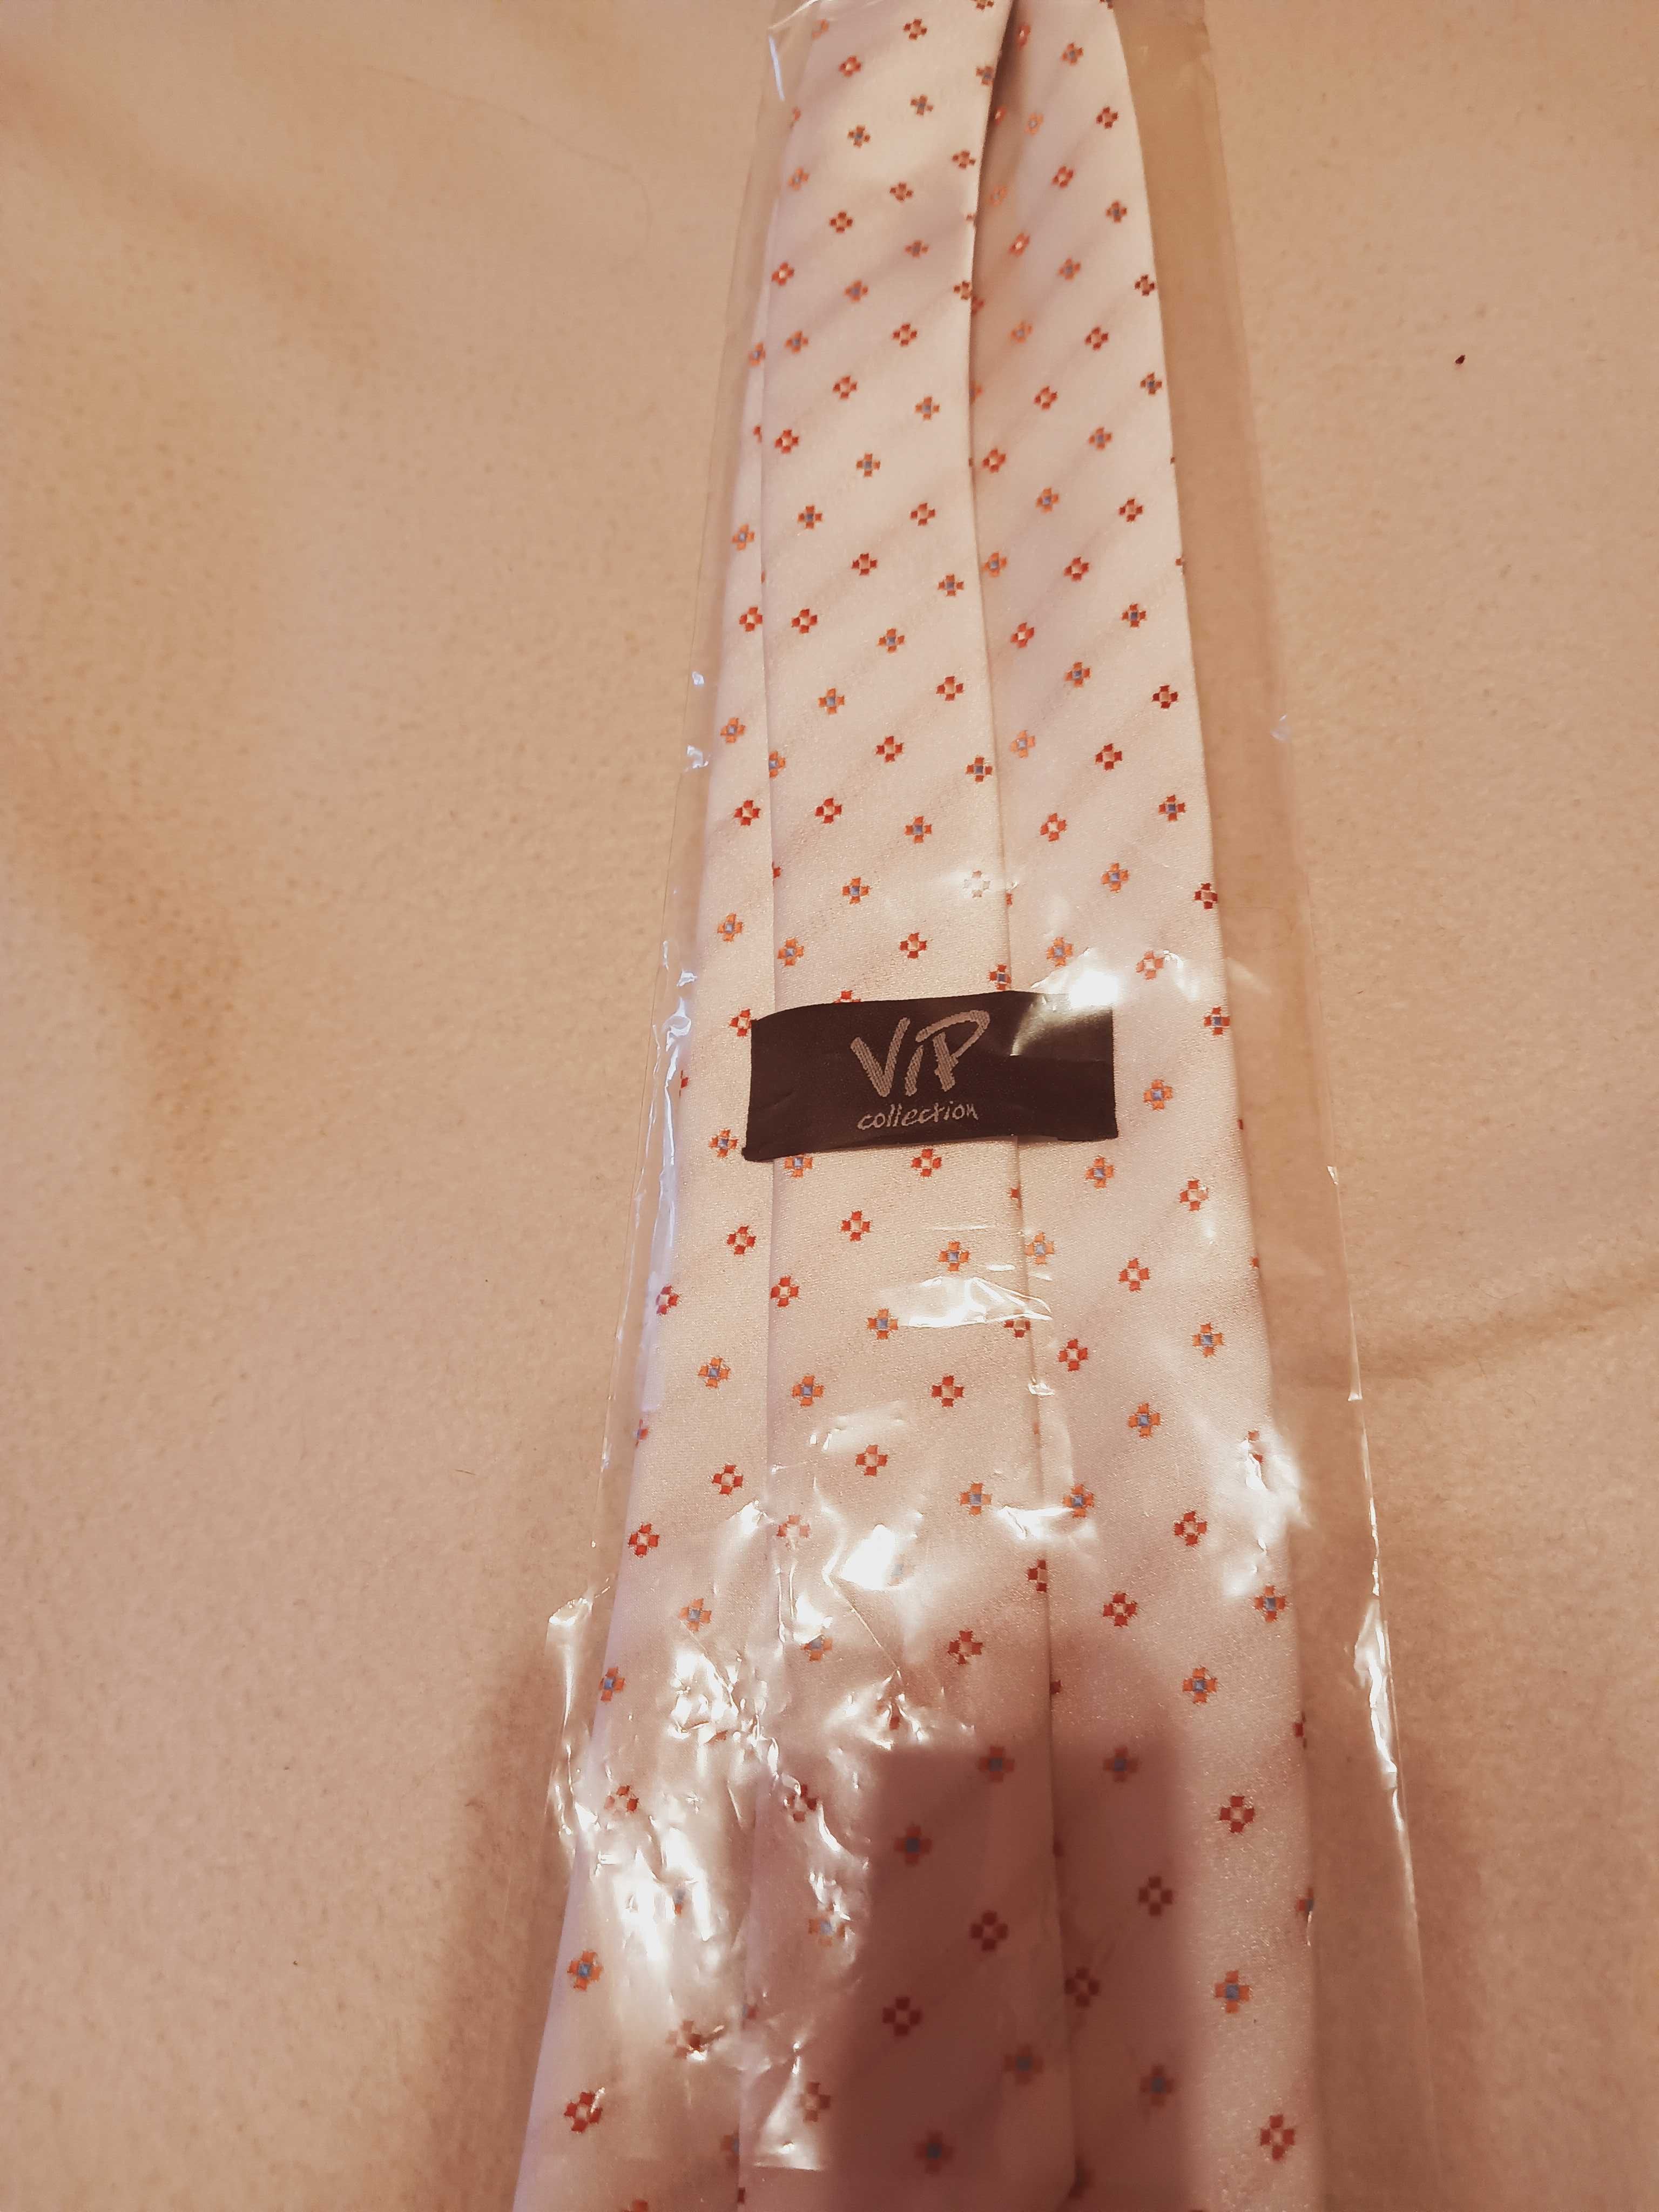 Krawat męski nowy w kolorze białym/ecru z delikatnym wzorkiem